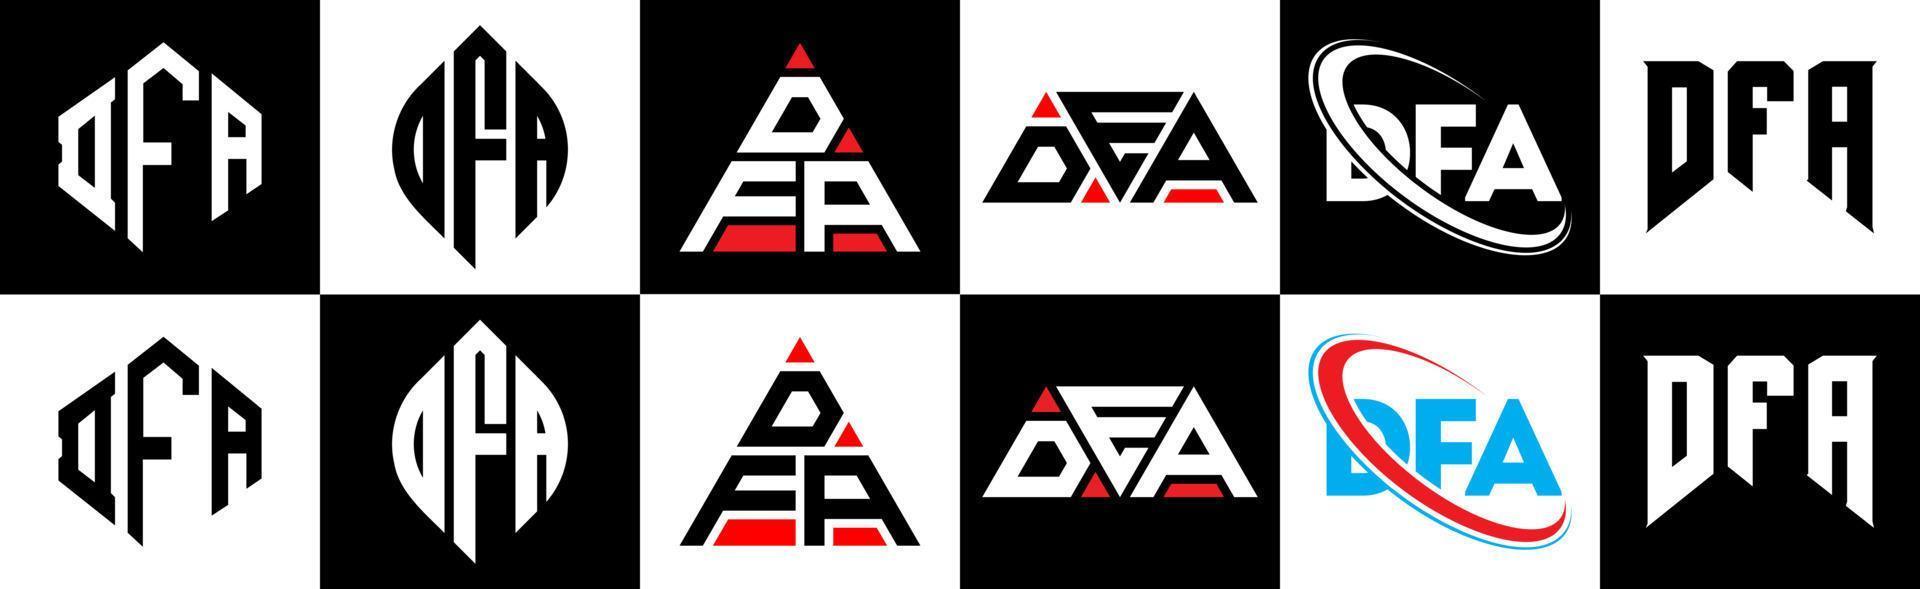 création de logo de lettre dfa en six styles. dfa polygone, cercle, triangle, hexagone, style plat et simple avec logo de lettre de variation de couleur noir et blanc dans un plan de travail. logo minimaliste et classique dfa vecteur